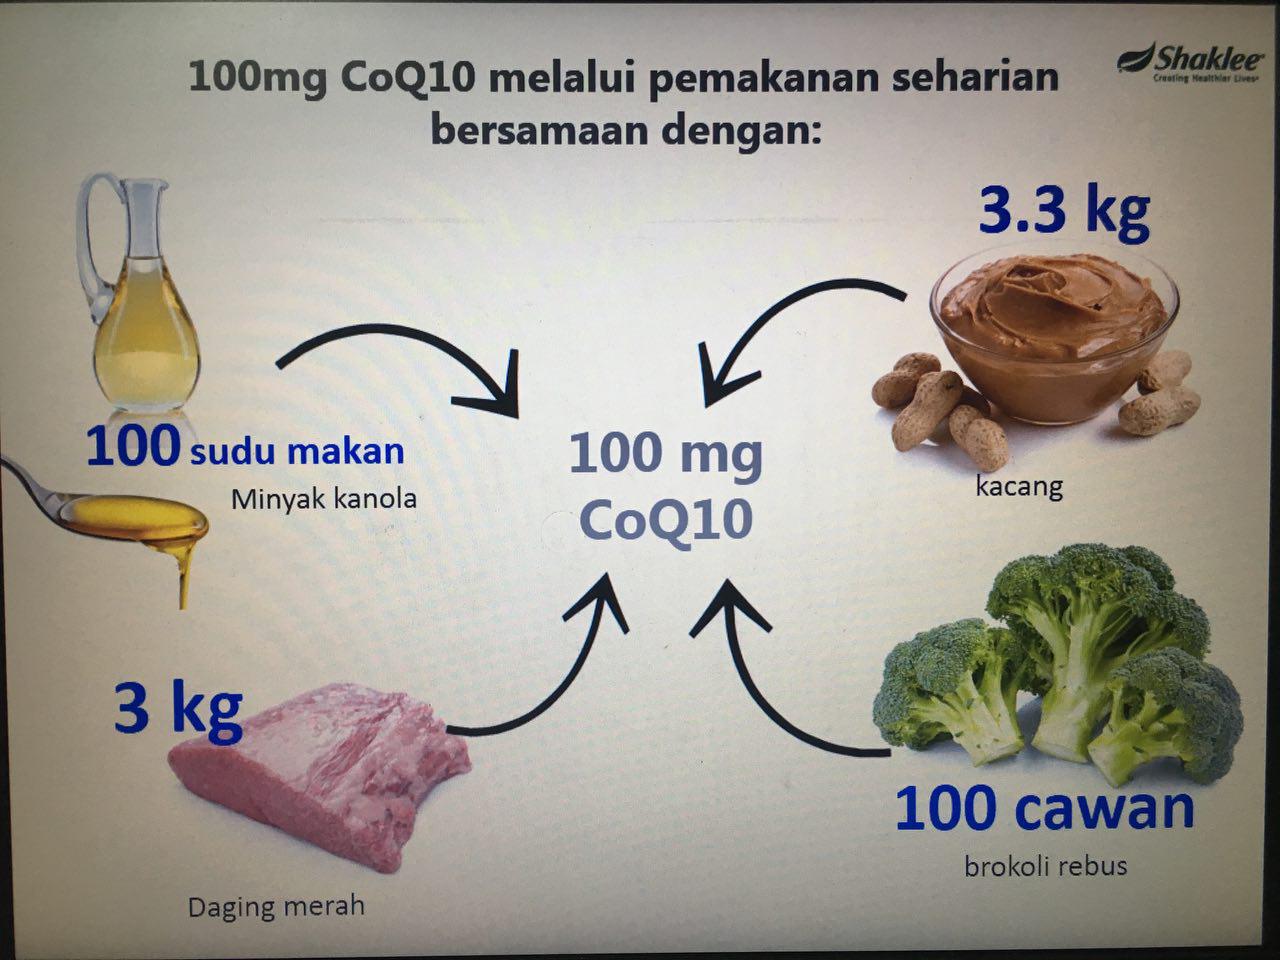 Kita harus ambil makanan sebanyak ini untuk dapatgkan khasiat 100mg CoQ10